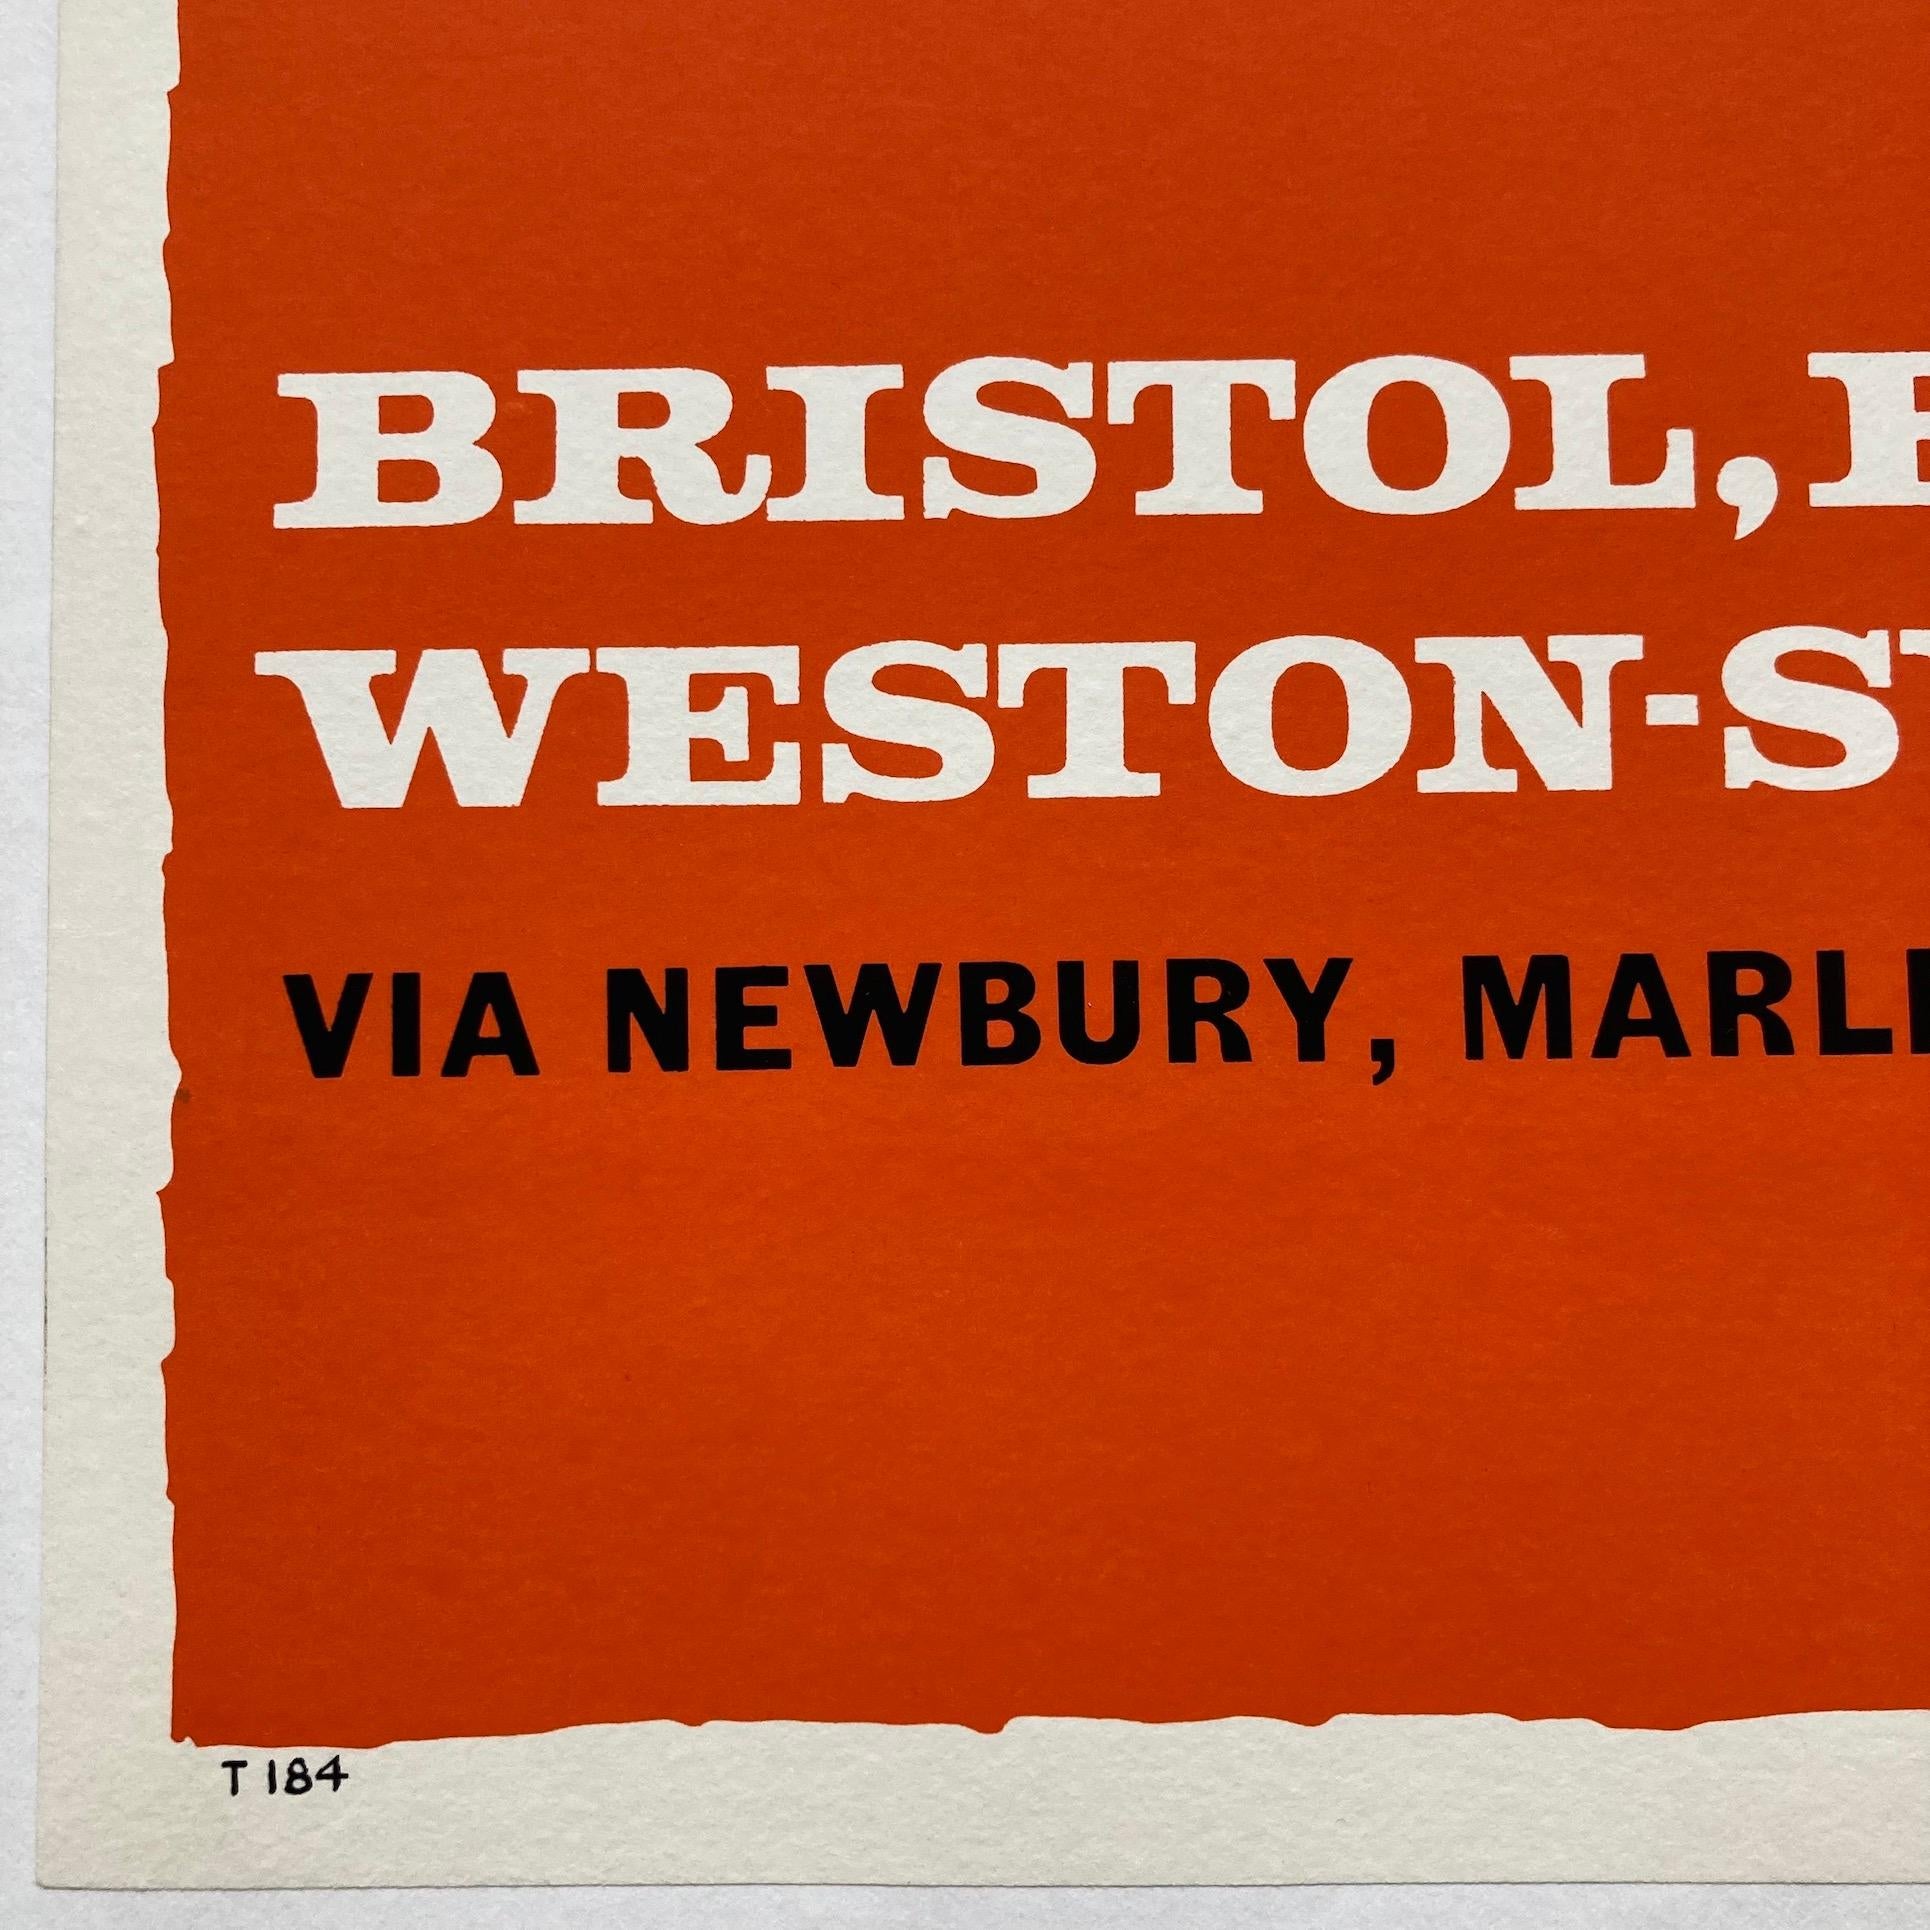 Affiche originale des années 1960 réalisée par Studio Seven pour promouvoir les services d'autocars express de Londres Victoria à Bristol, Bath et Weston-Super-Mare via Newbury, Marlborough et Chippenham. Cette affiche colorée et rare aurait été